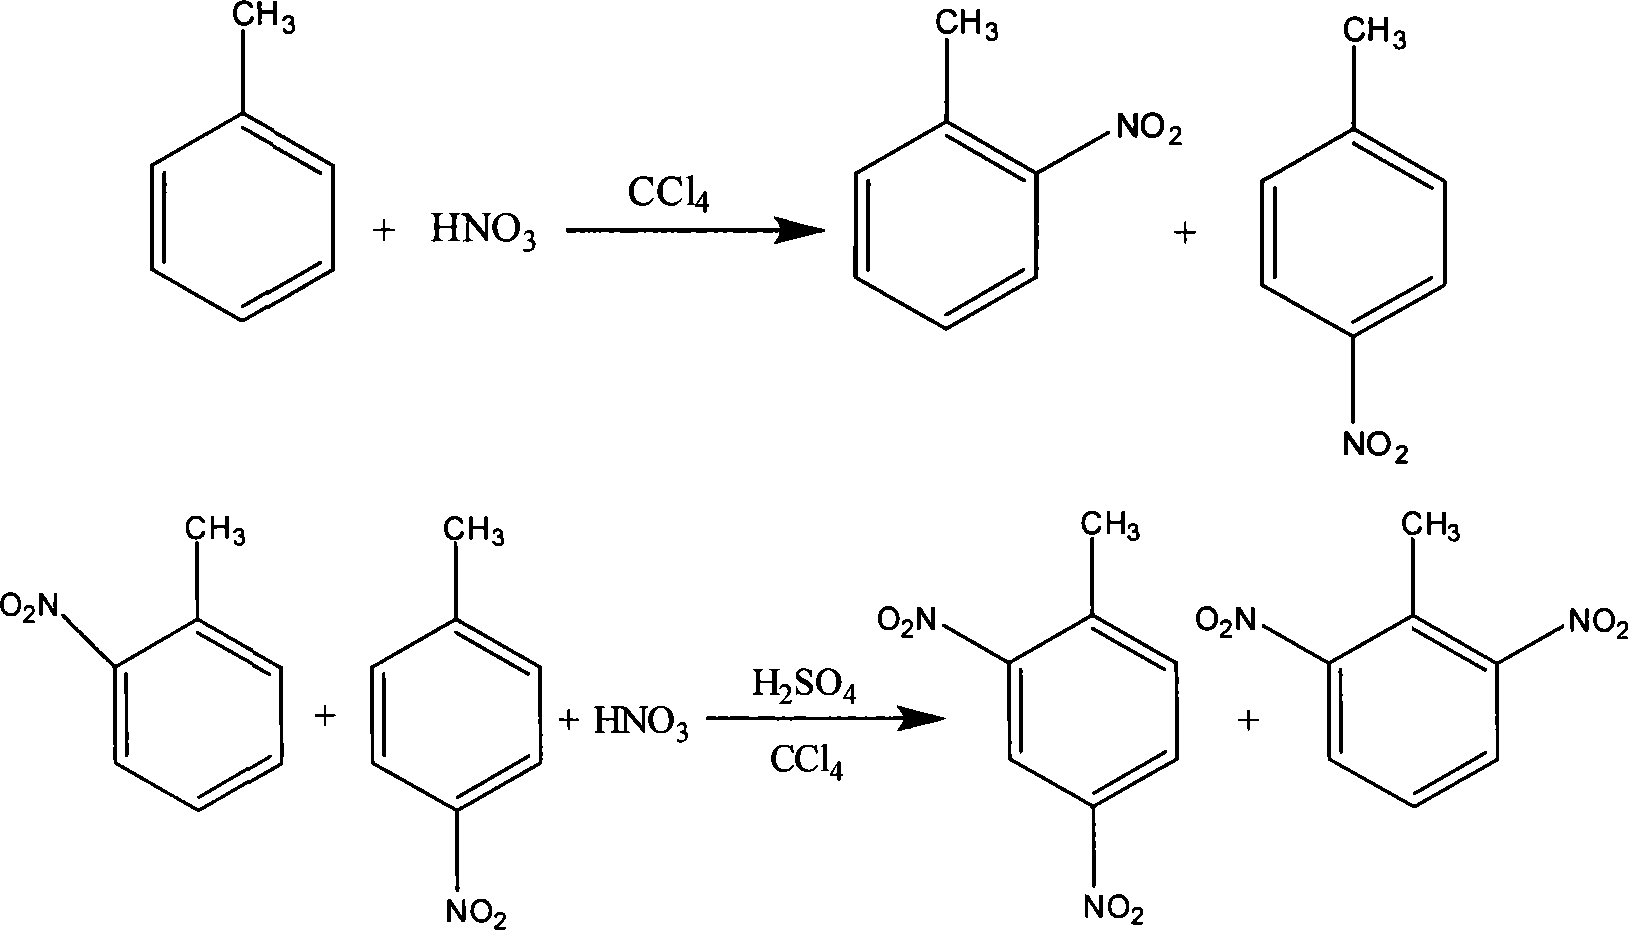 Method for producing civil dinitrotoluene